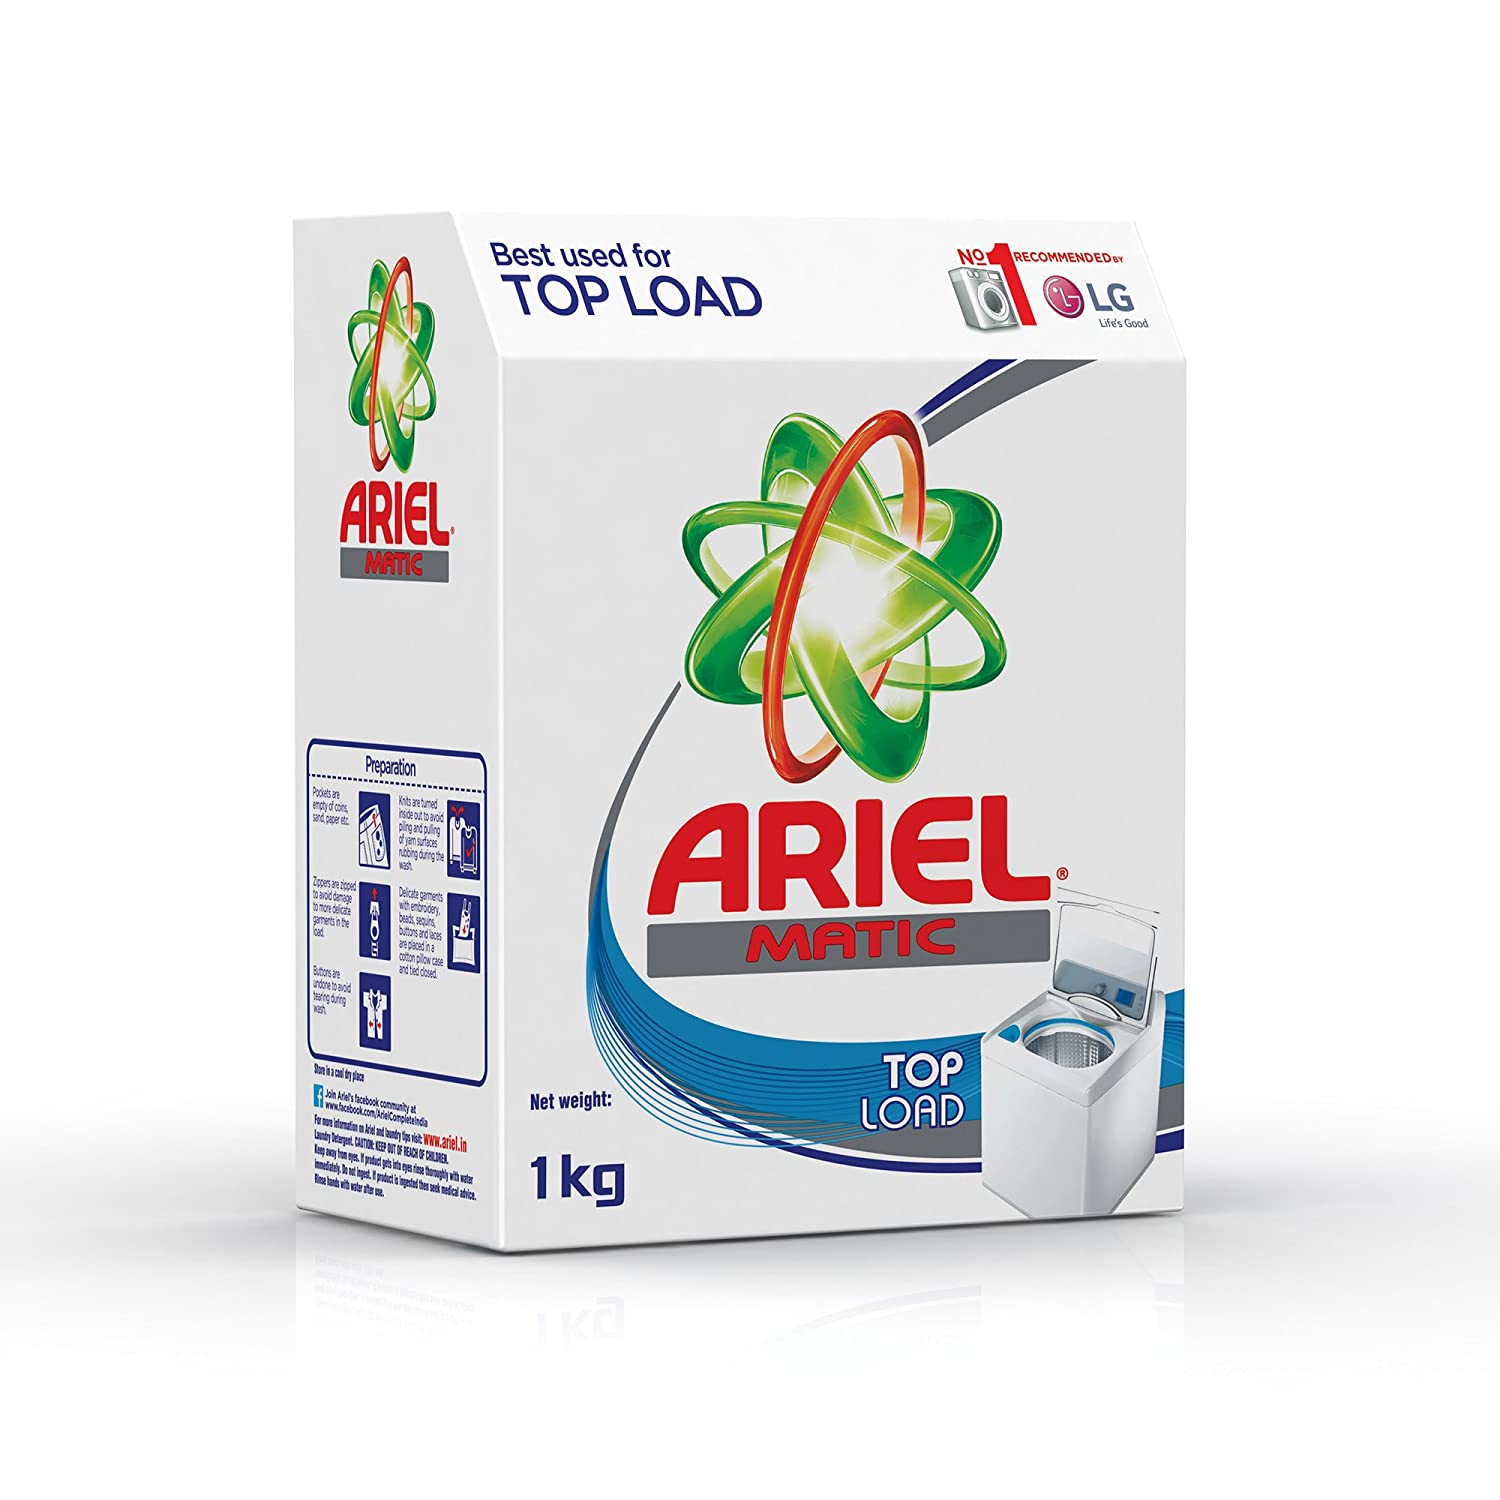 Ariel Matic Top Load Detergent Powder